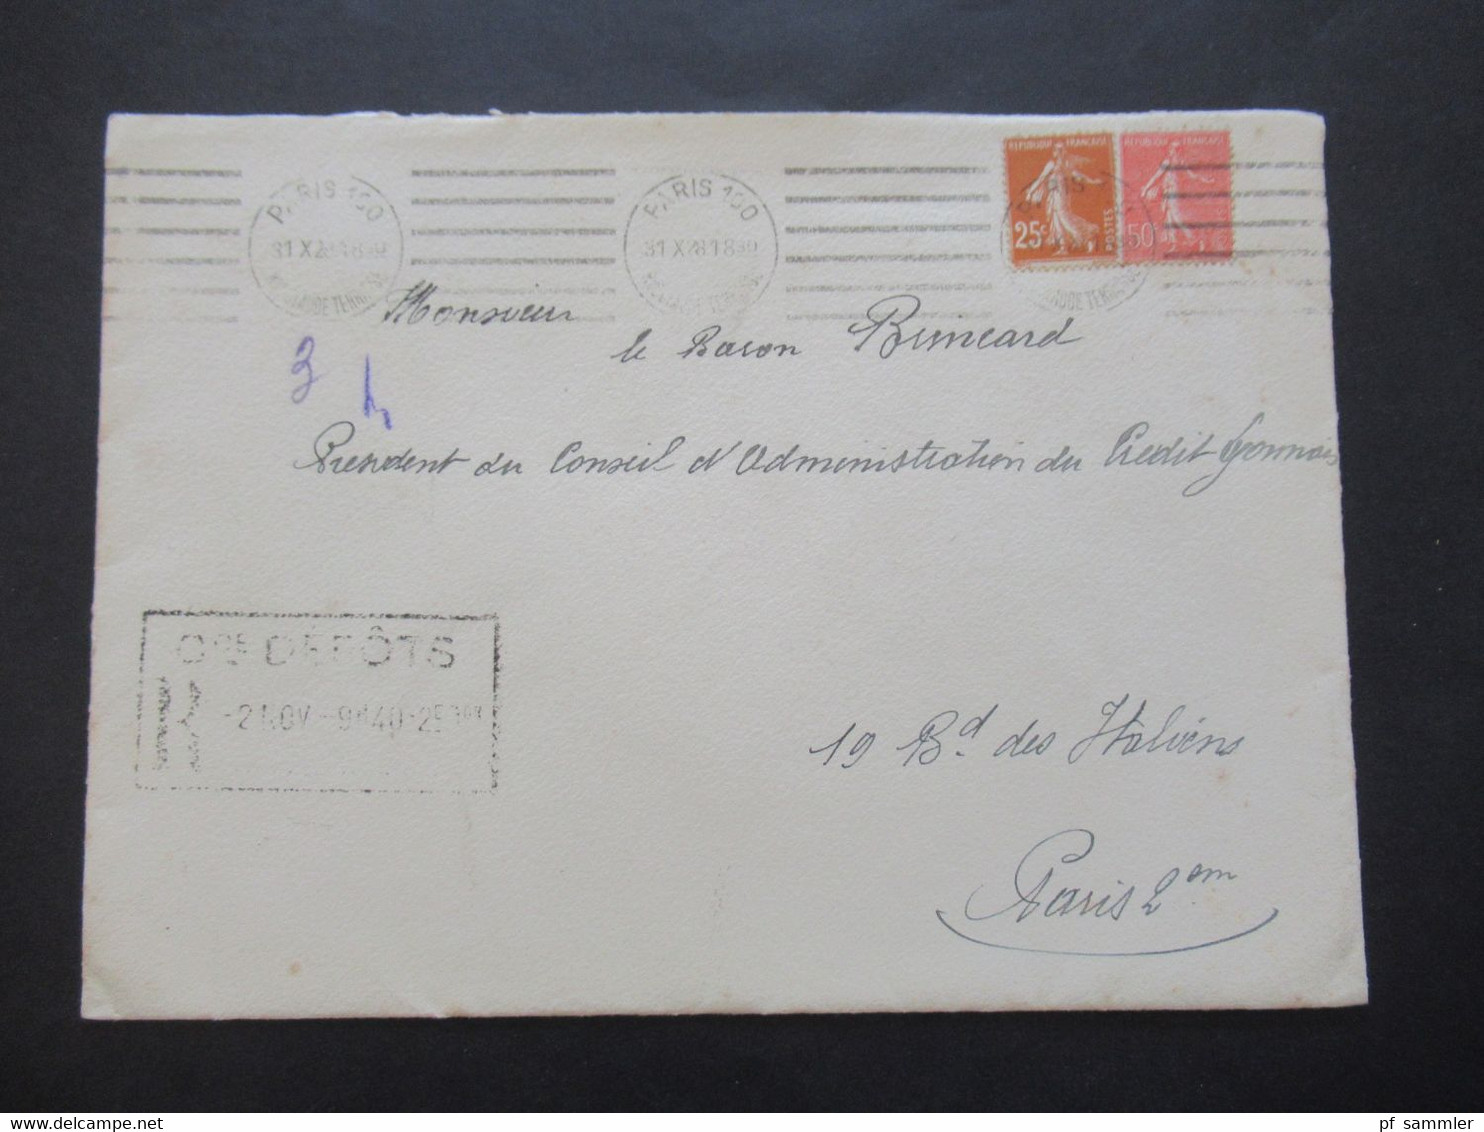 Frankreich 1928 Umschlag Mit Original Einladungskarte Exposition Coloniale Int. De Paris 1931 Gaston Doumergue President - Briefe U. Dokumente